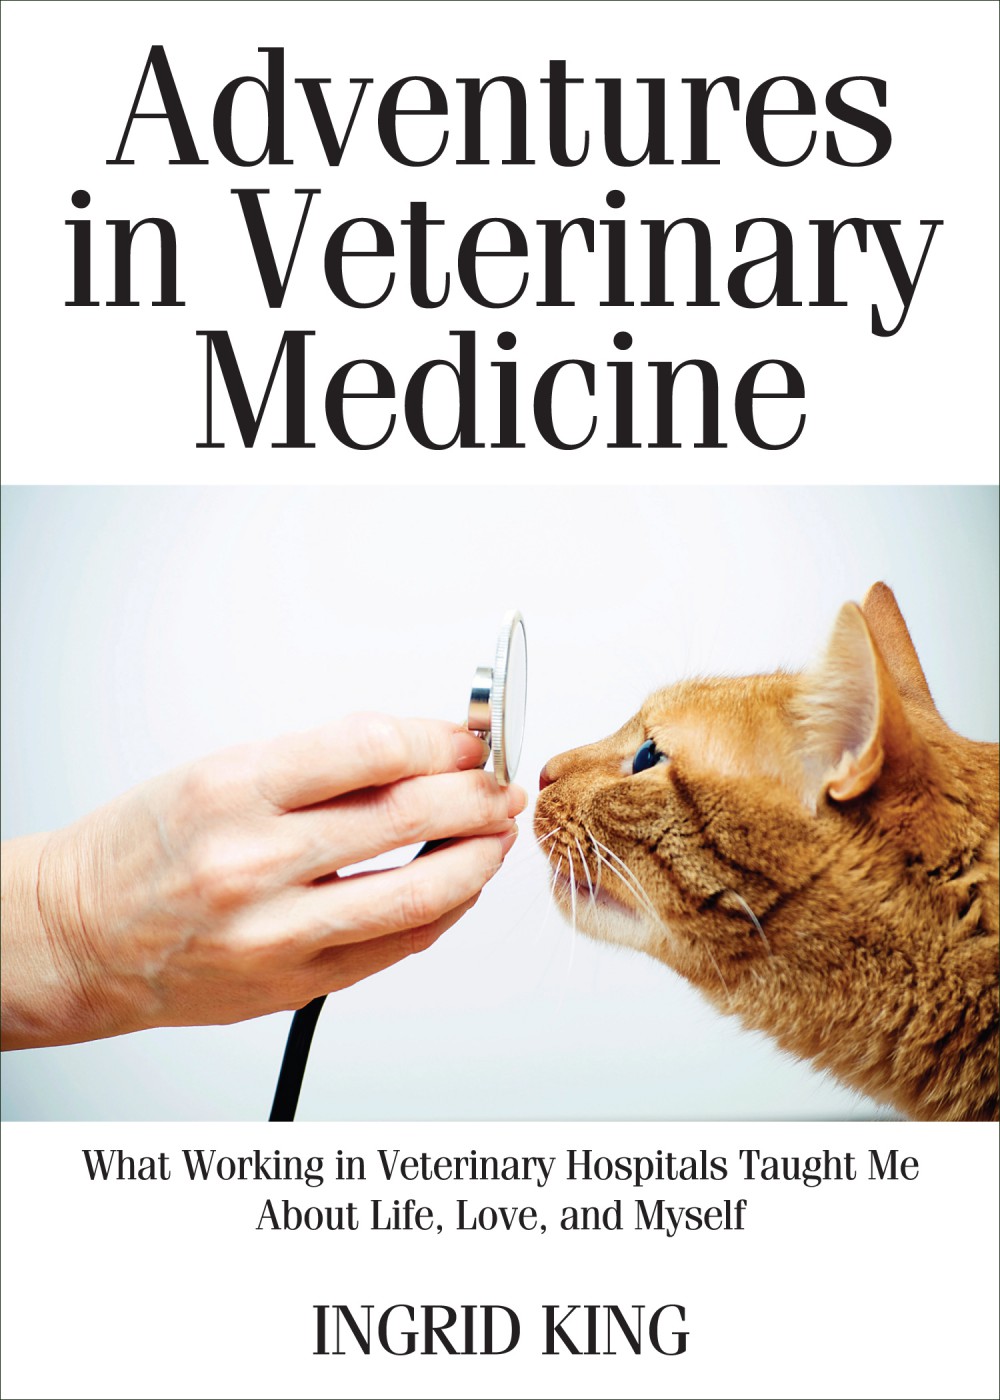 "Adventures in Veterinary Medicine" by Ingrid King.